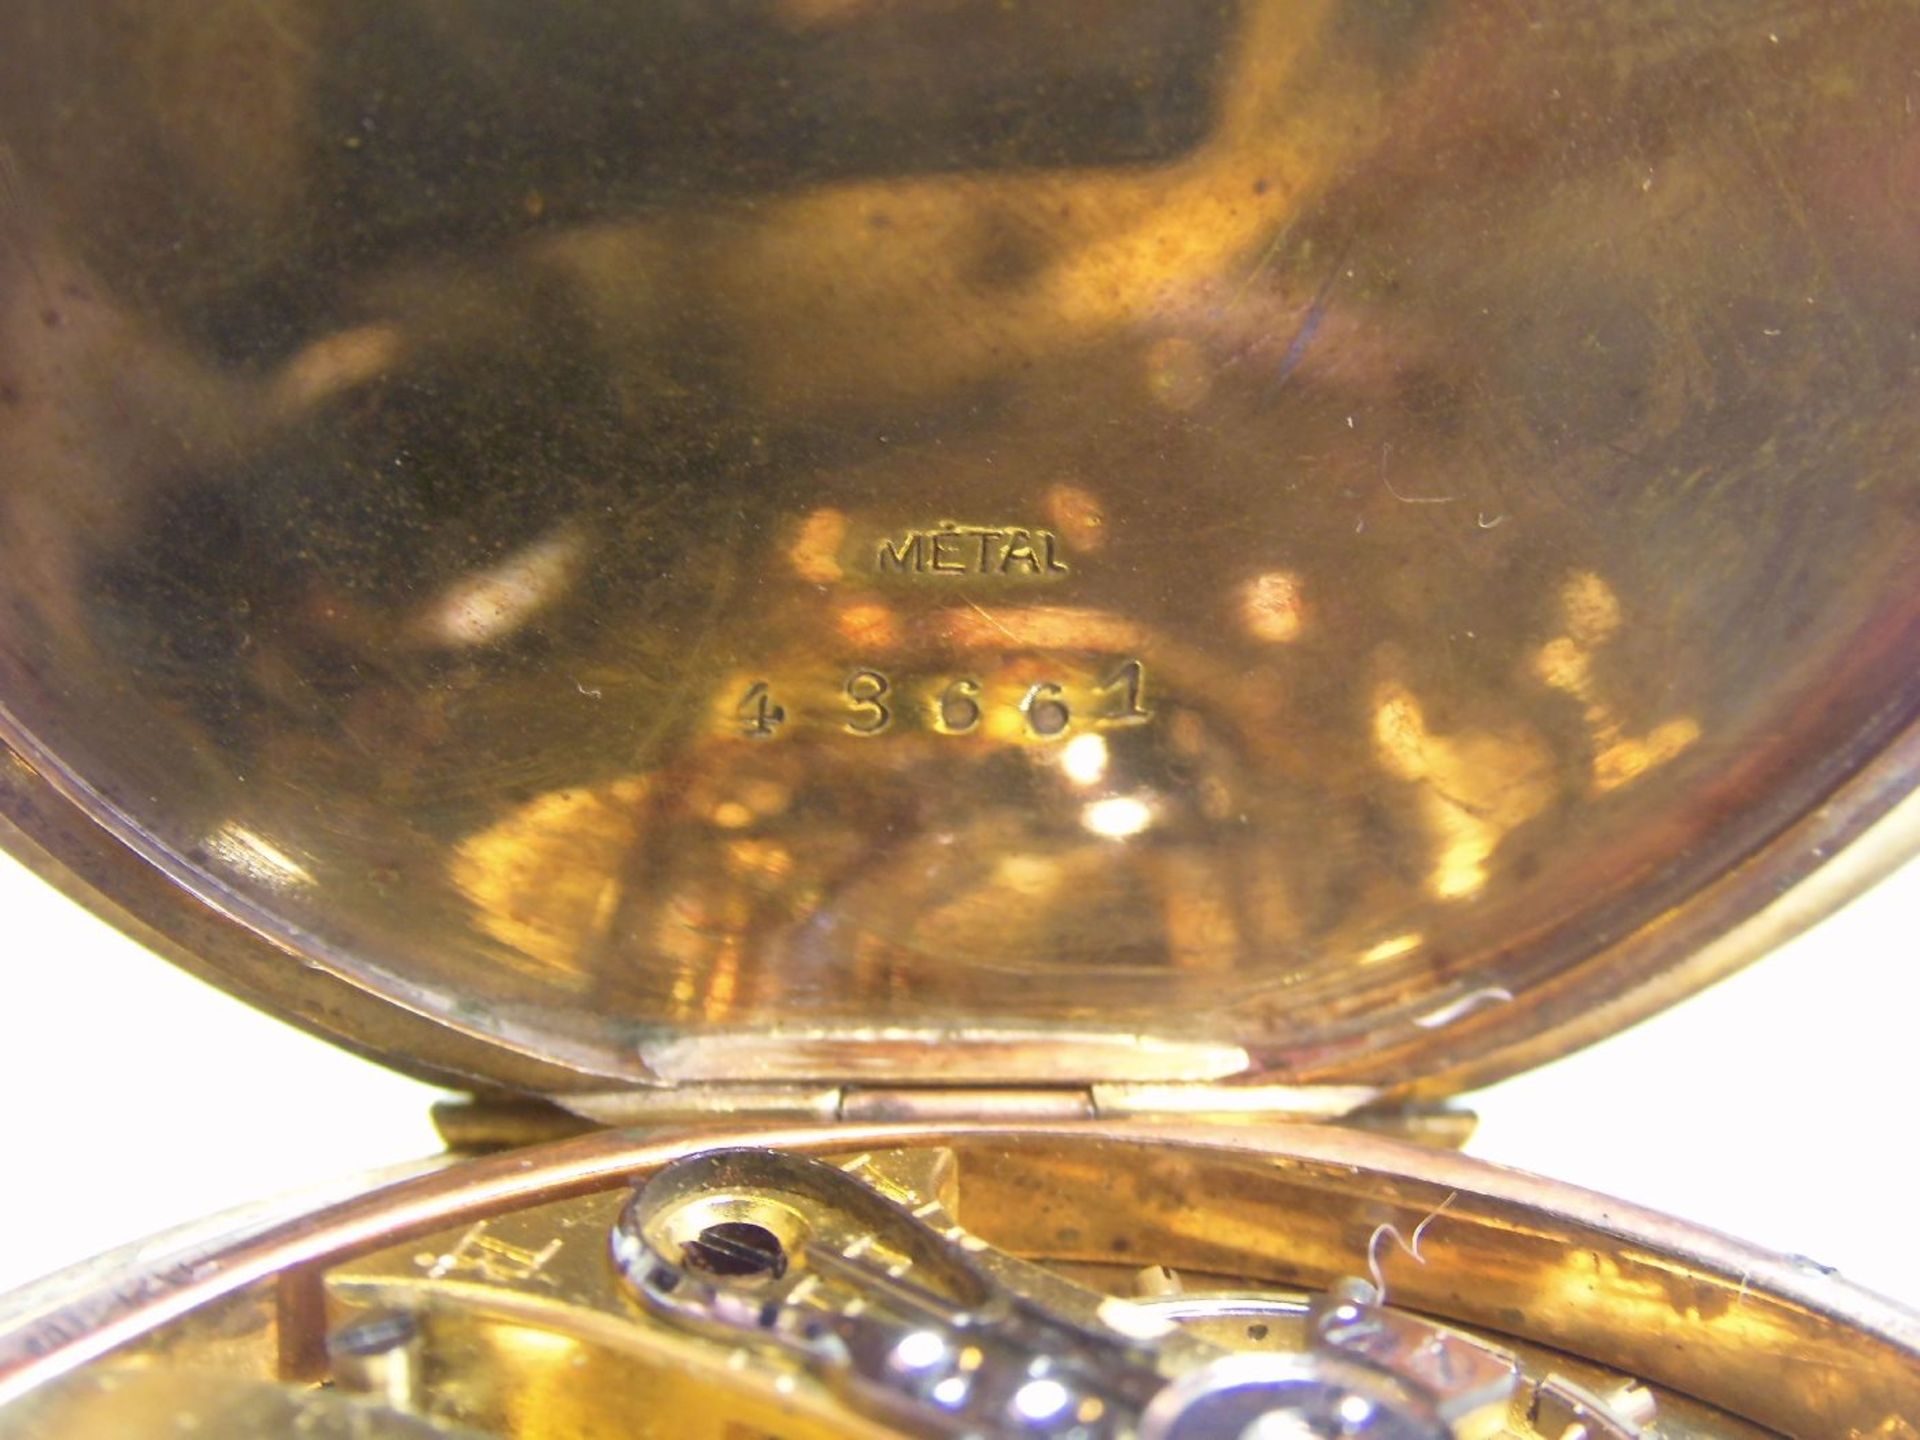 TASCHENUHR / pocketwatch, 14 kt. Gold, Staubdeckel Metall. Weißes Zifferblatt, kleine Sekunde bei - Image 5 of 7